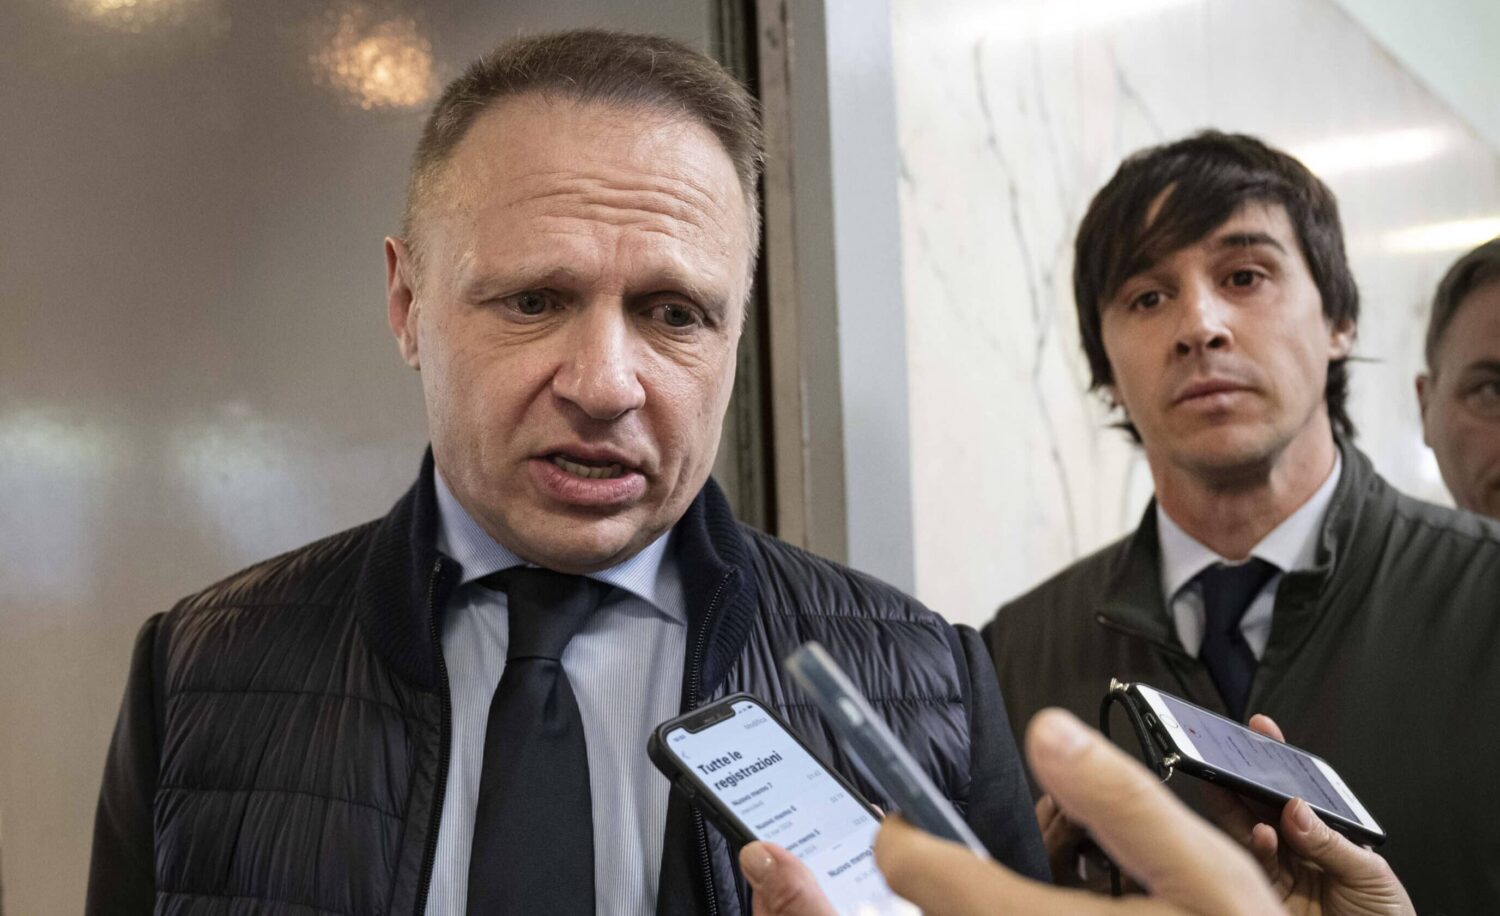 Signorelli annuncia le dimissioni dopo la bufera sulle chat antisemite: “Non sarò più il portavoce di Lollobrigida”